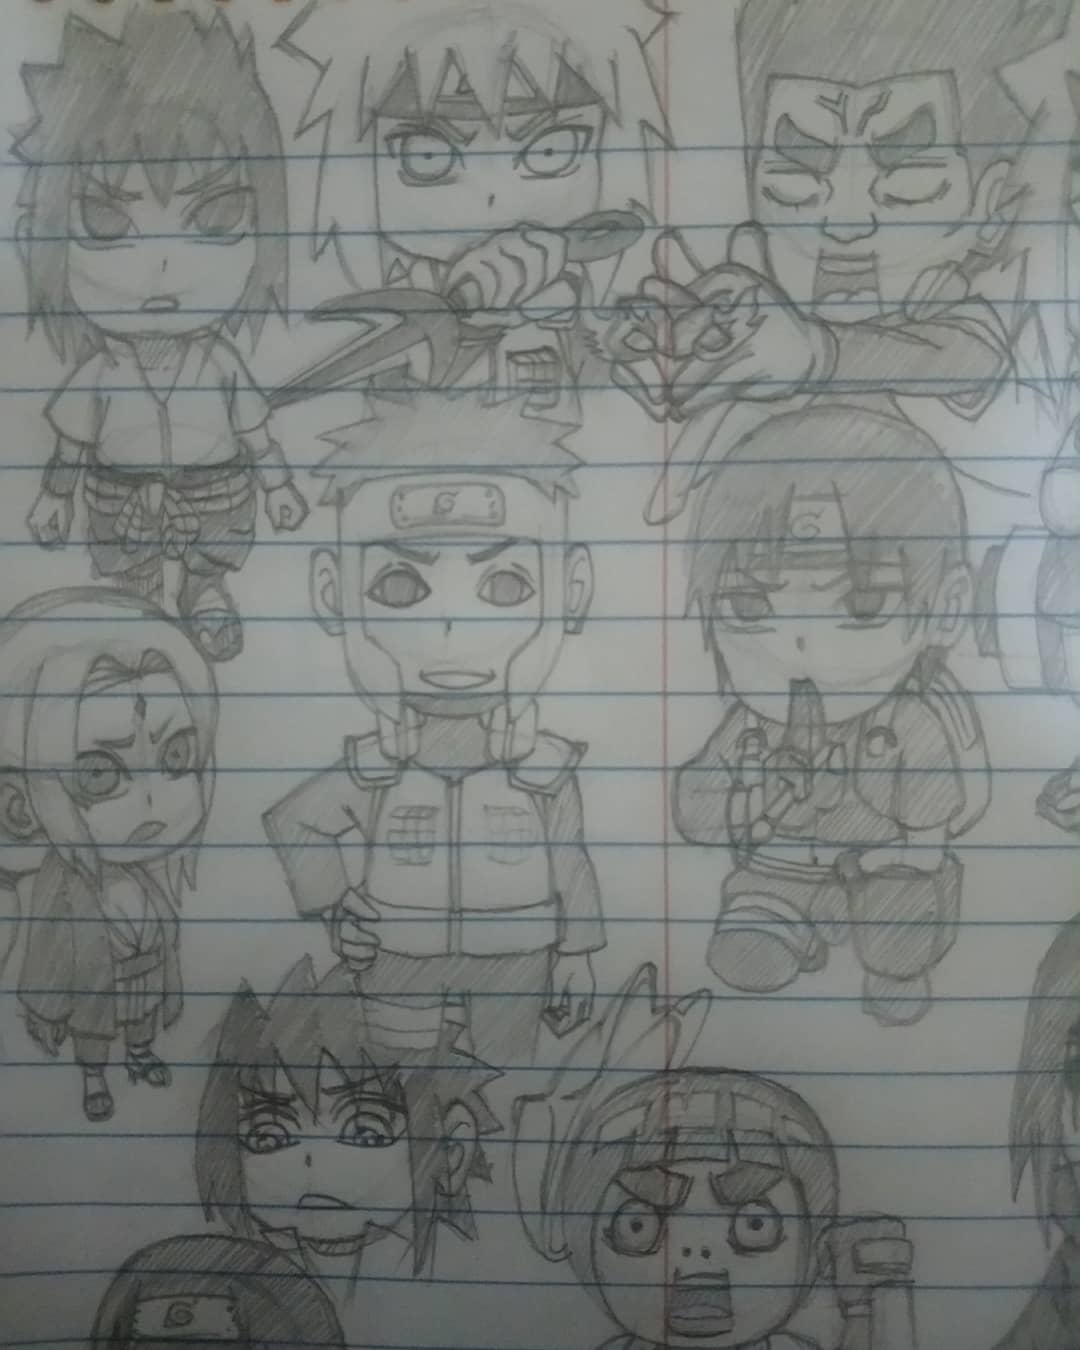 chibi naruto characters drawing